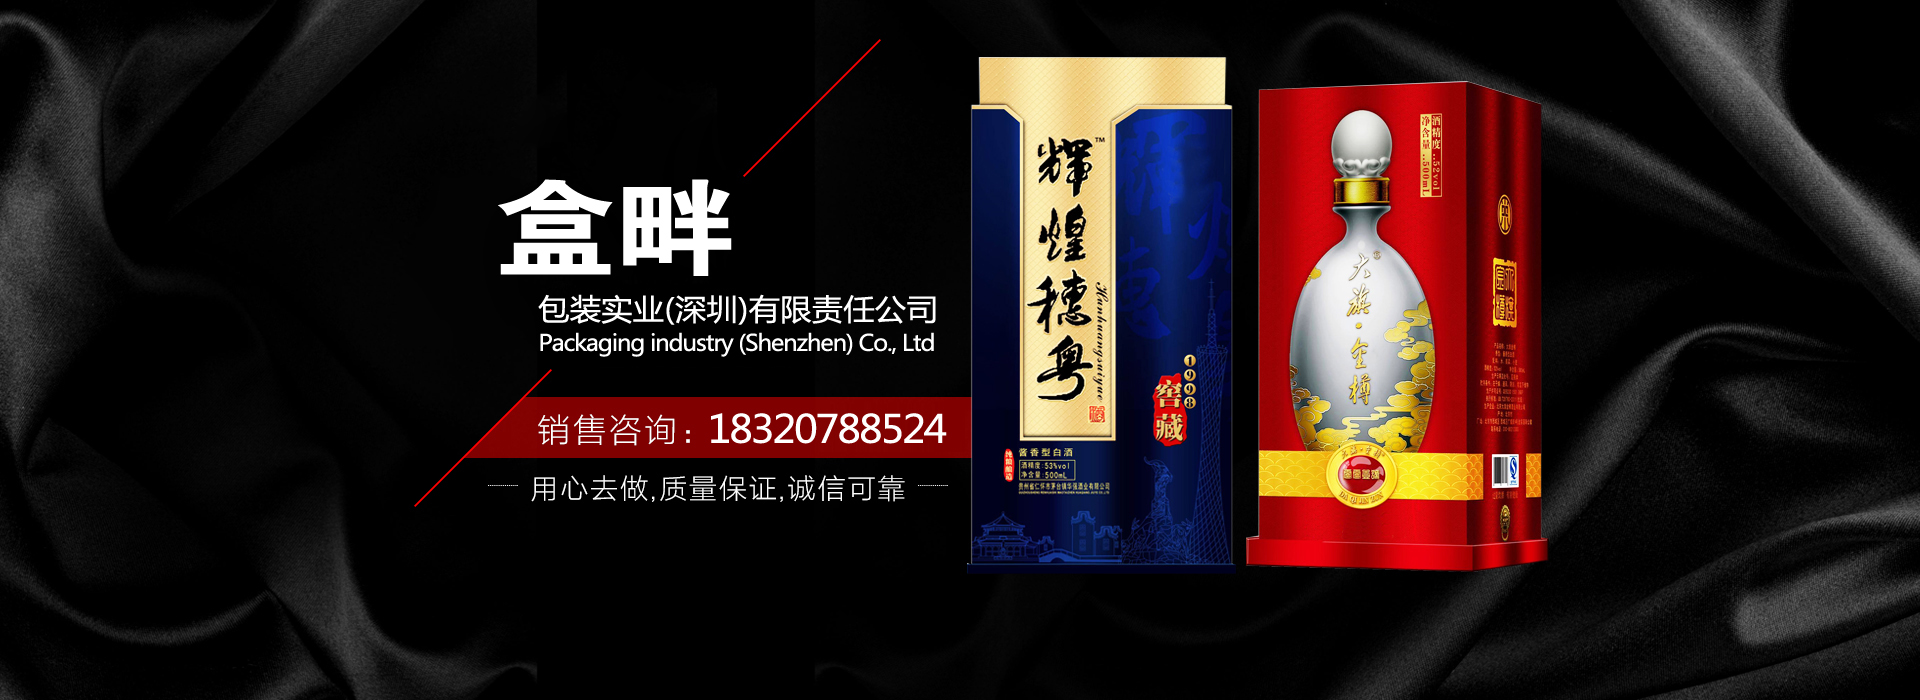 深圳白酒包装设计公司_酒瓶/酒盒类产品外包装设计_盒畔